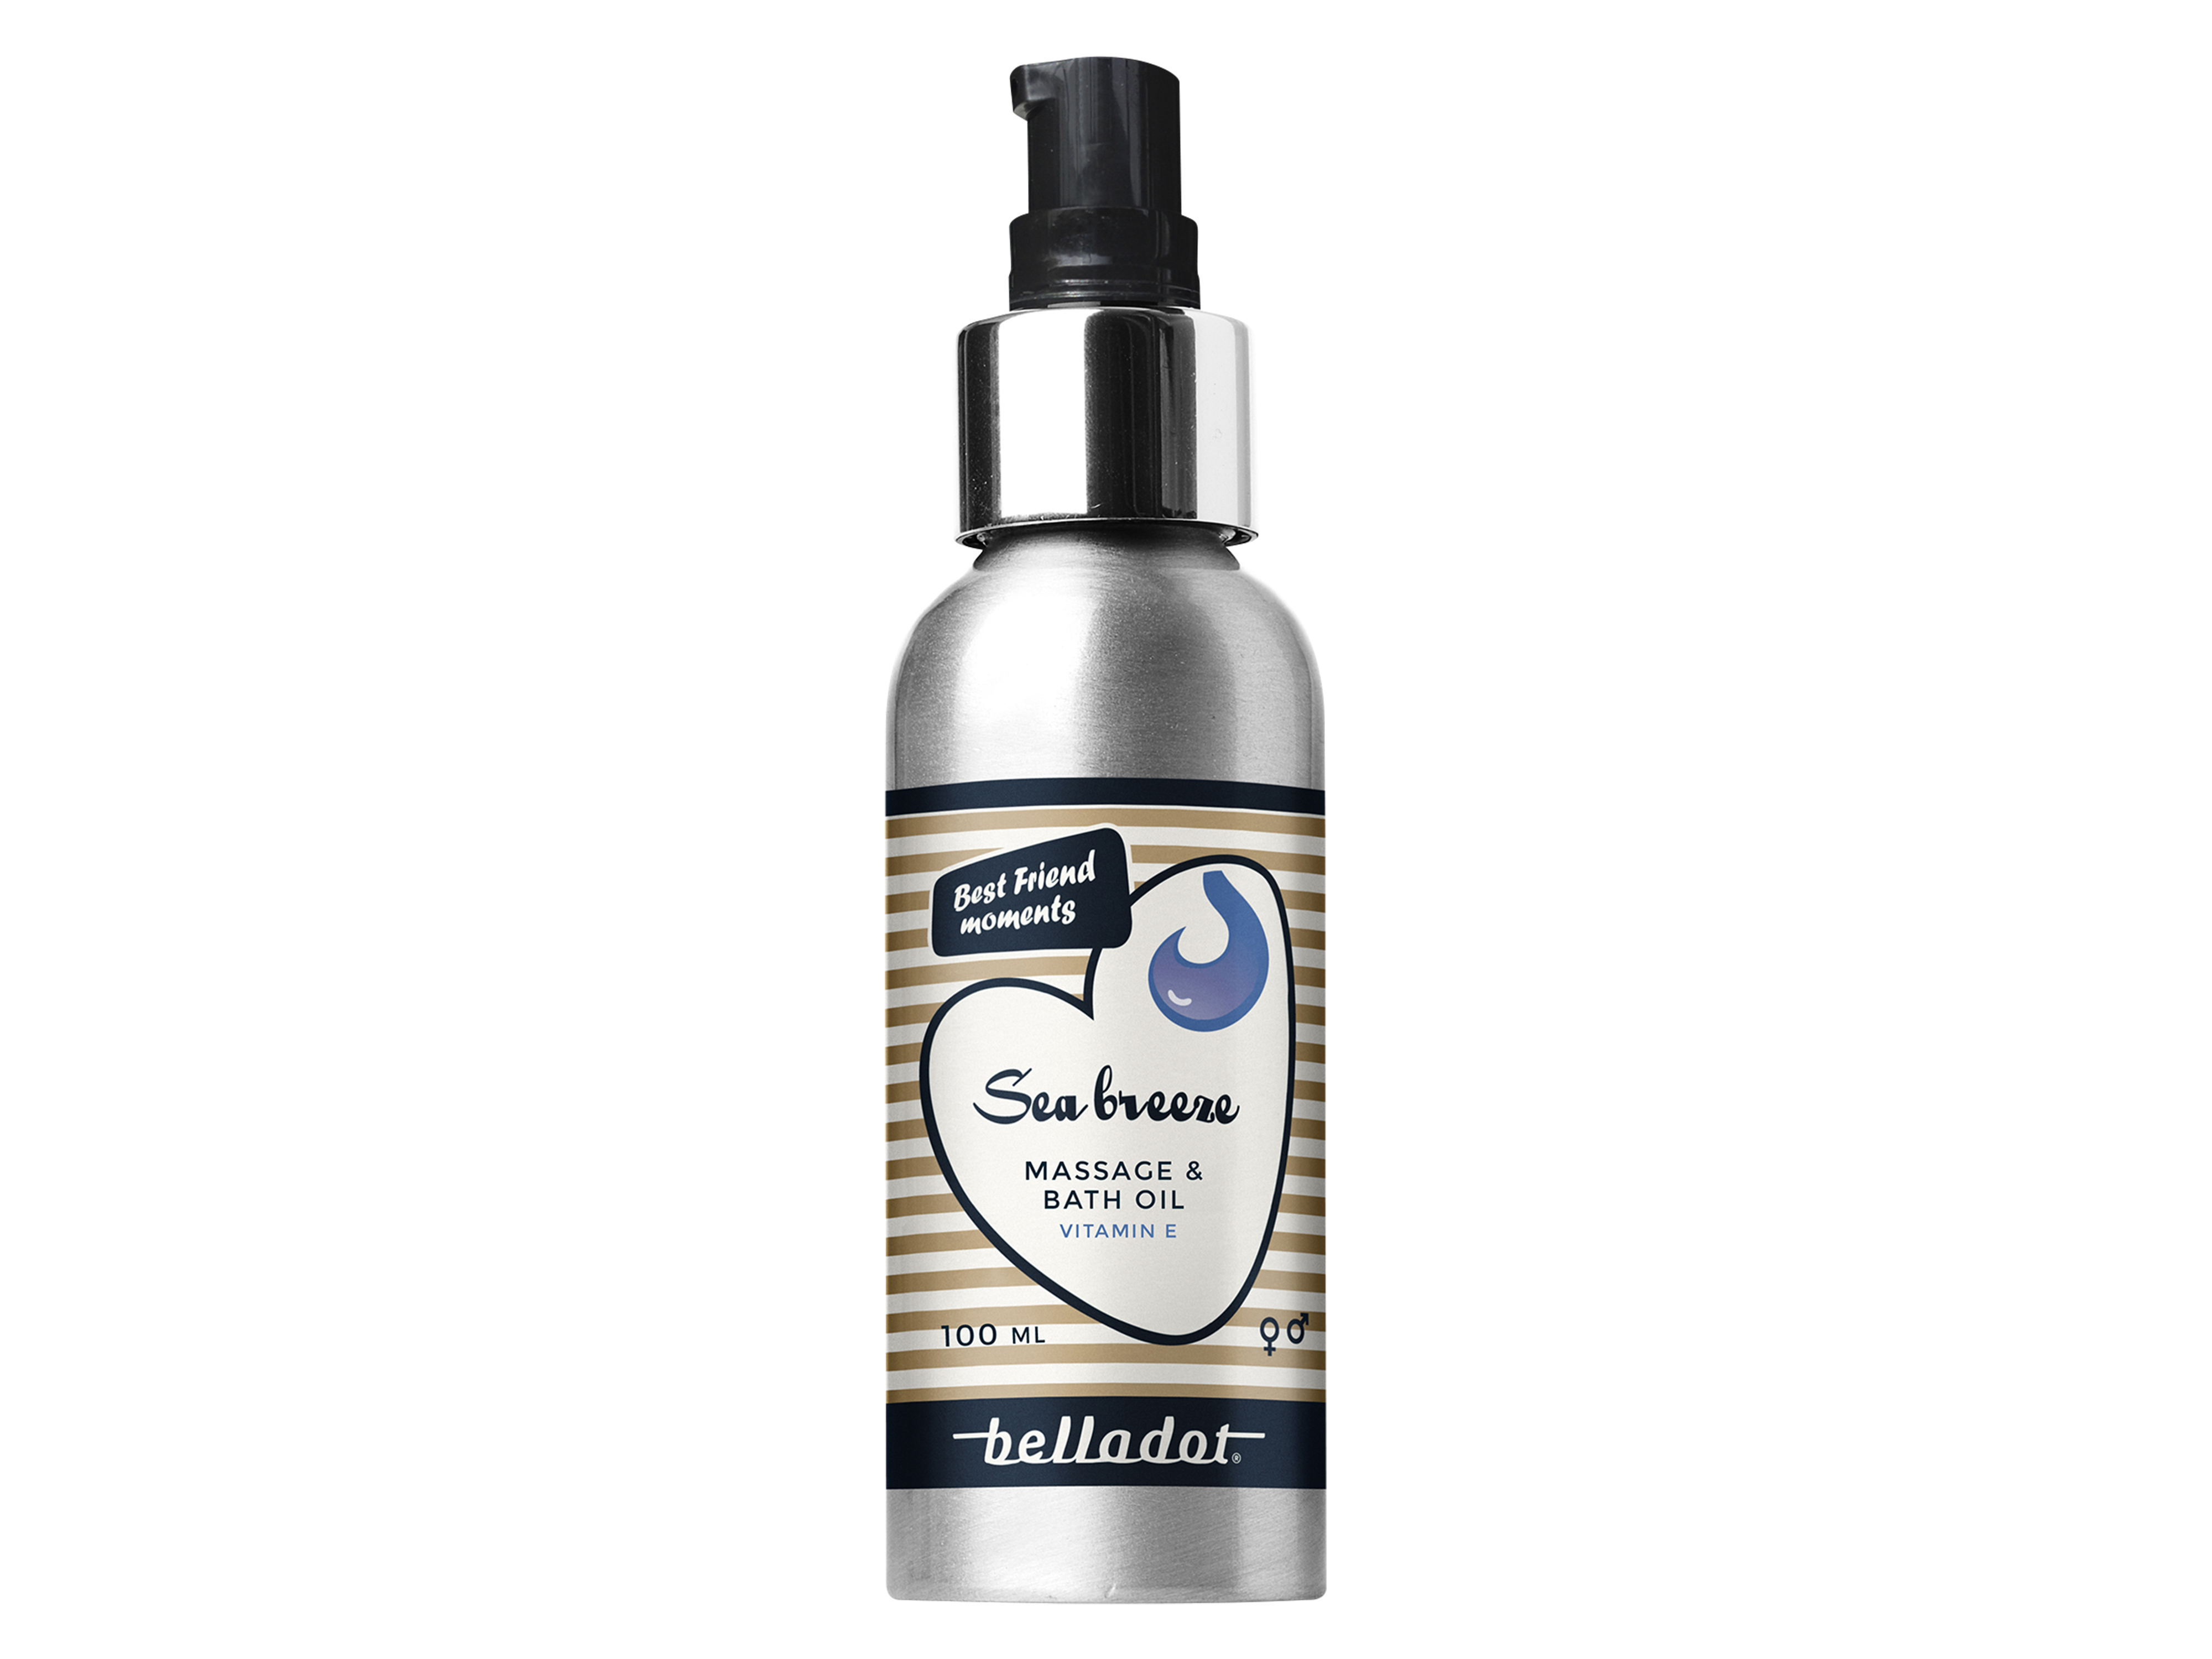 Belladot Seabreeze Massage & Bath Oil, 100 ml